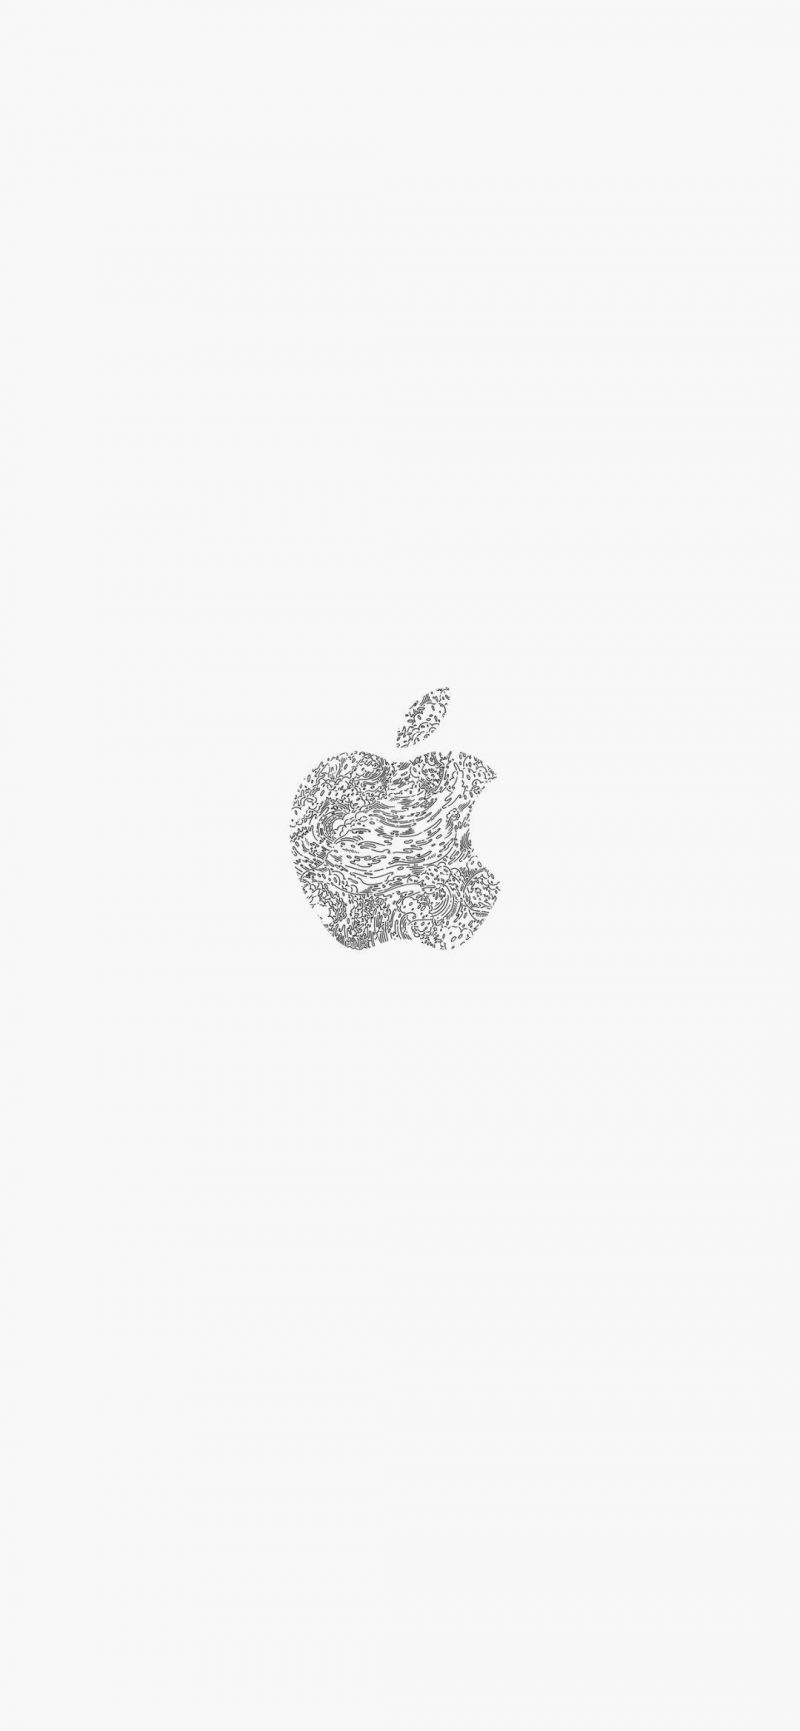 桌布 蘋果新發佈會手機桌布 簡潔白色 Itw01